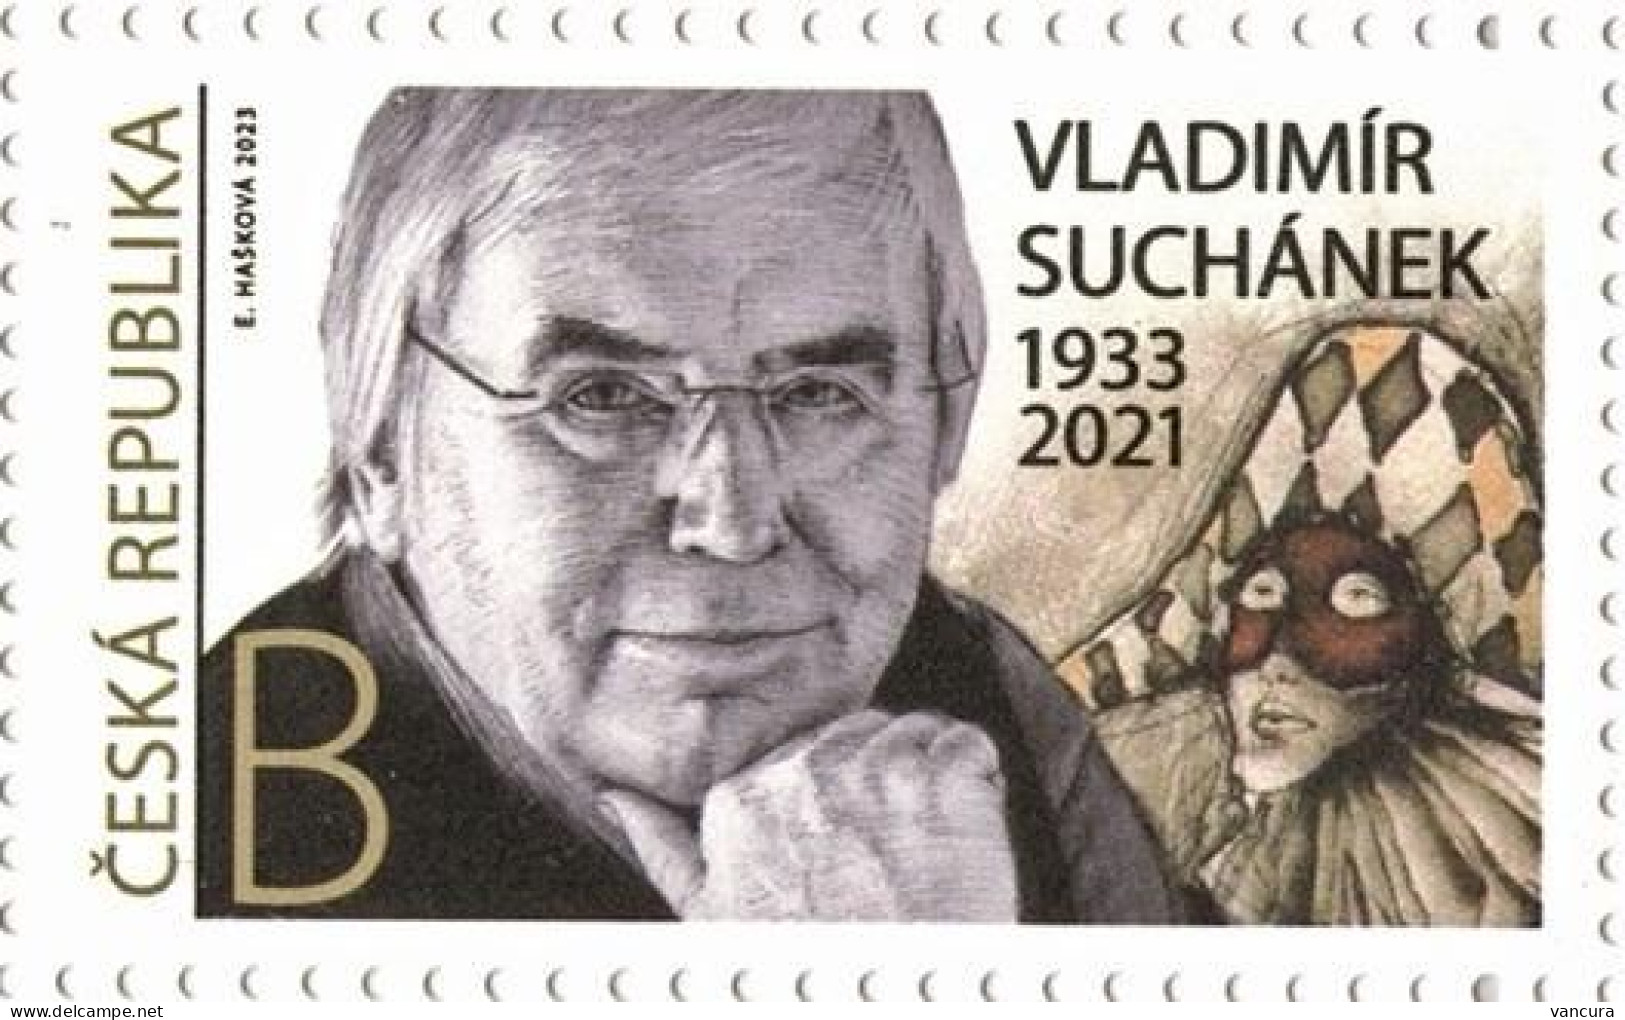 ** 1187 Czech Republic Traditions Of The Czech Stamp Design Vladimir Suchanek 2023 - Ongebruikt